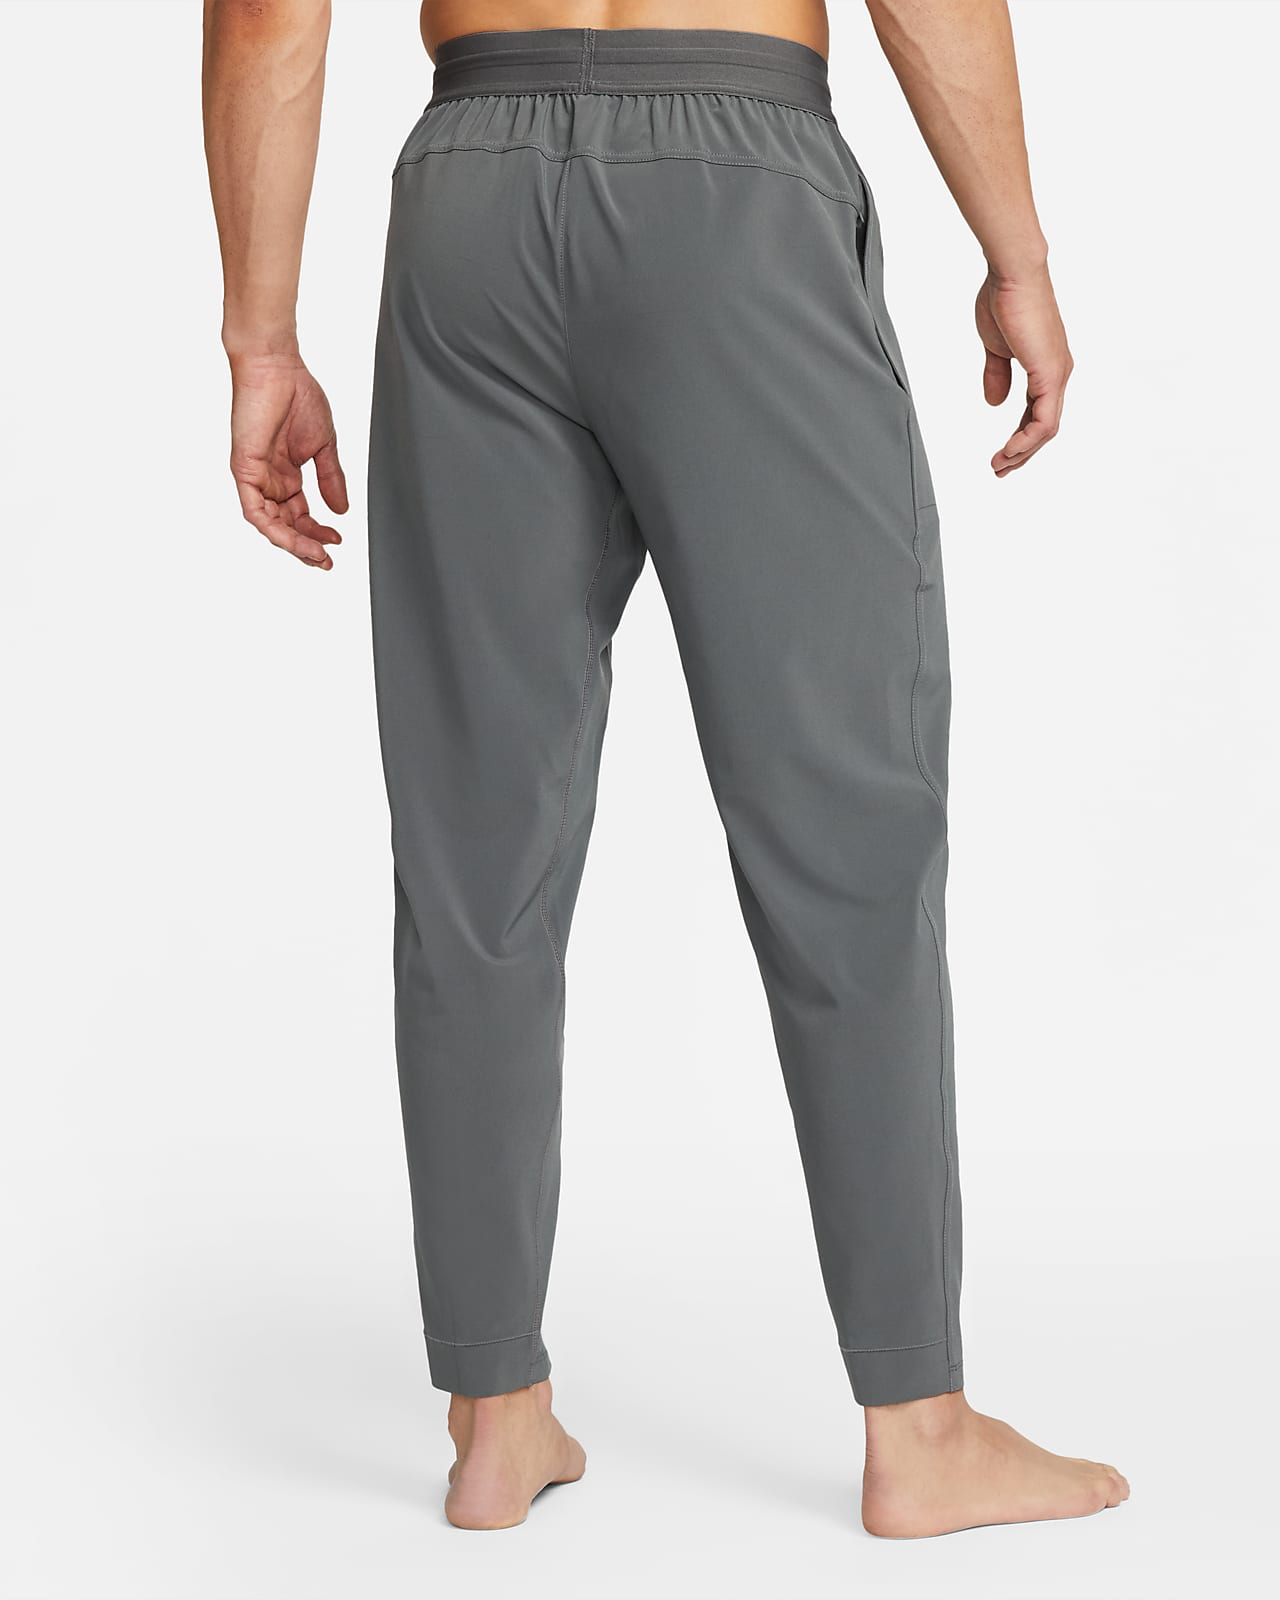 Pants de yoga hombre Nike Flex. Nike.com